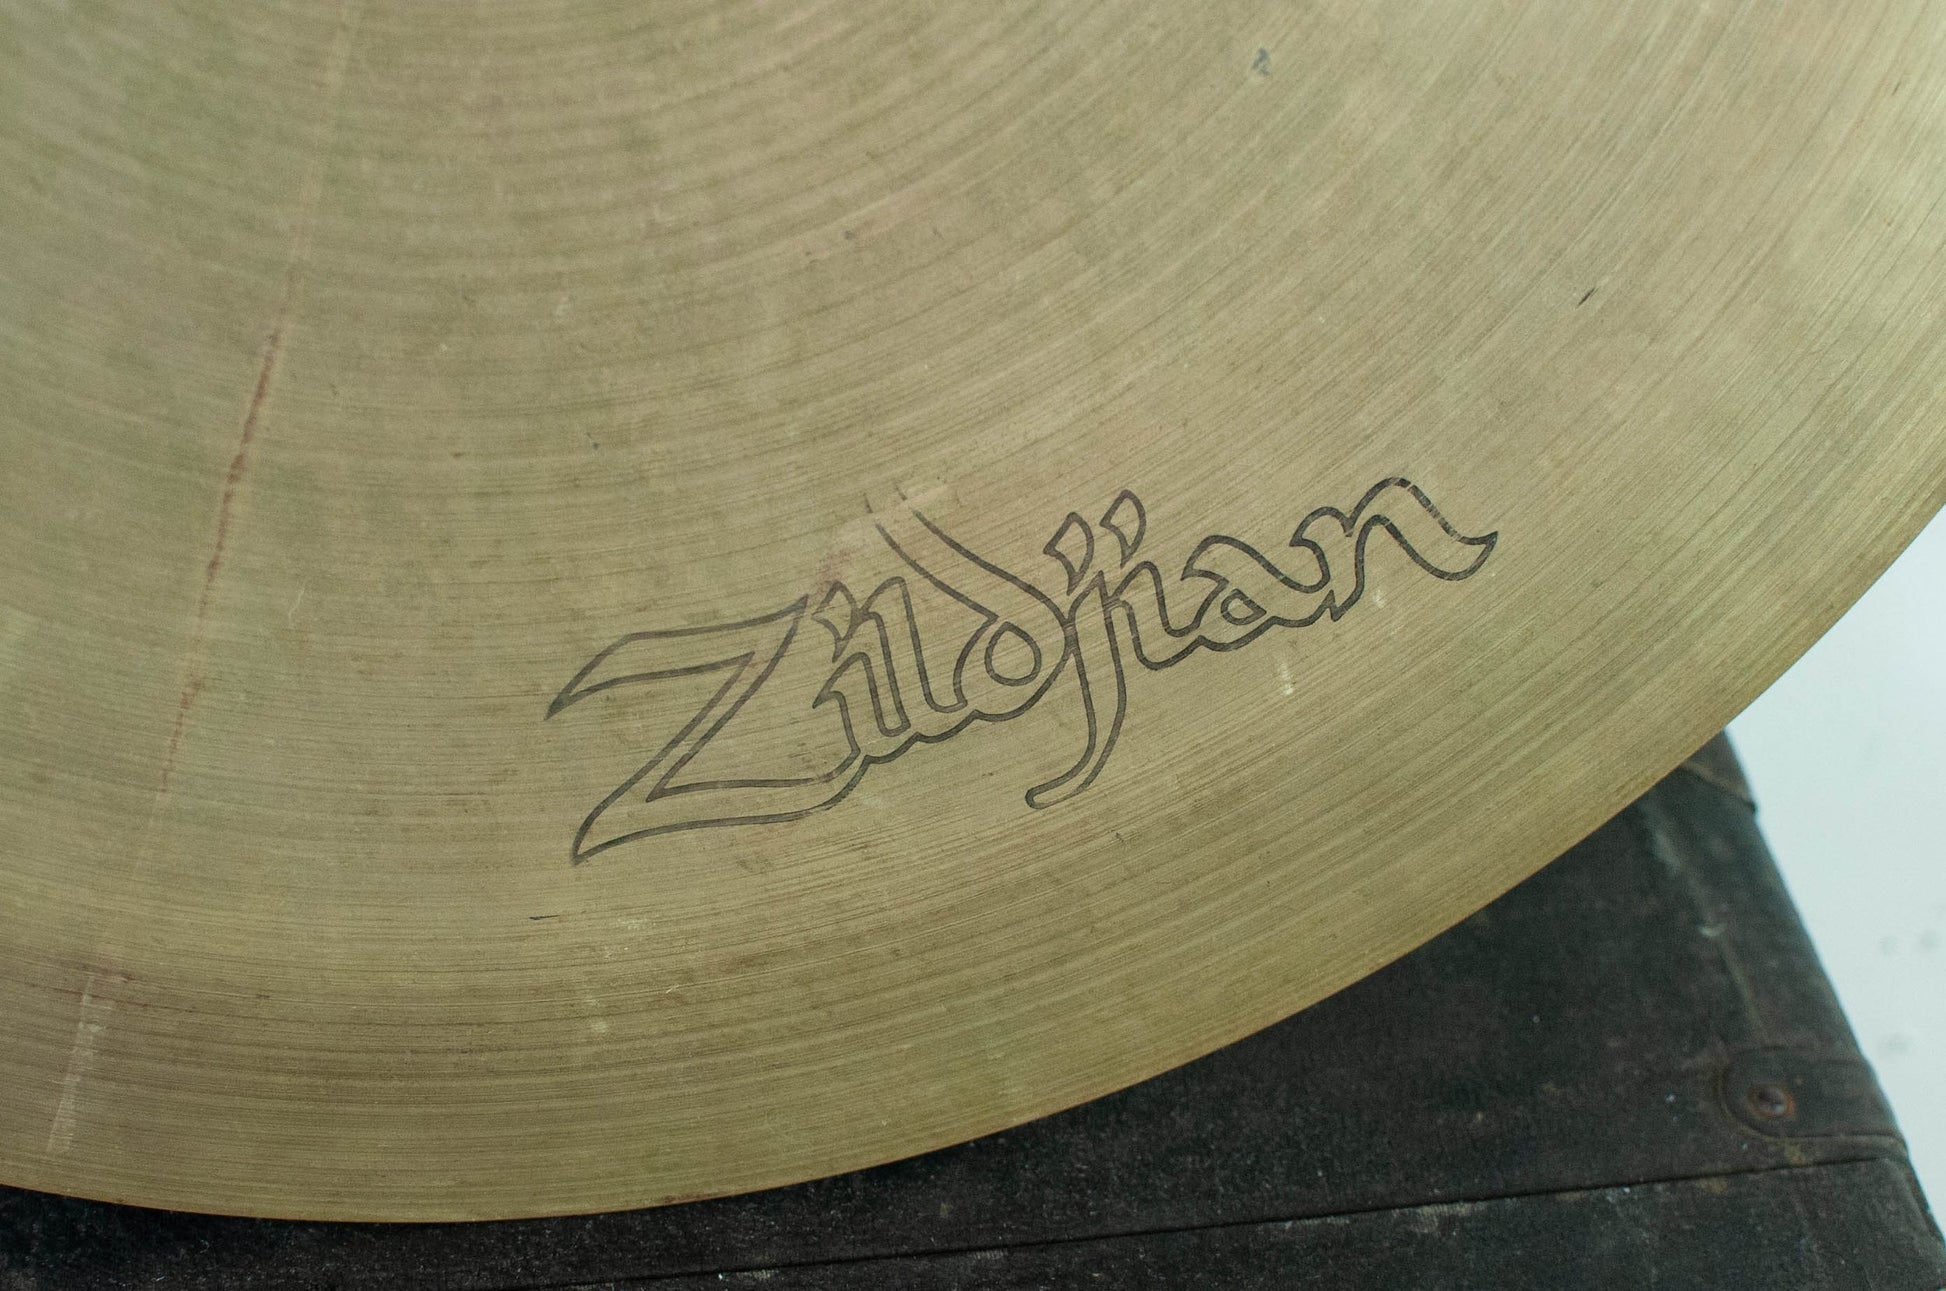 1970s Zildjian A 20" Hollow Logo Pang Cymbal 2015g